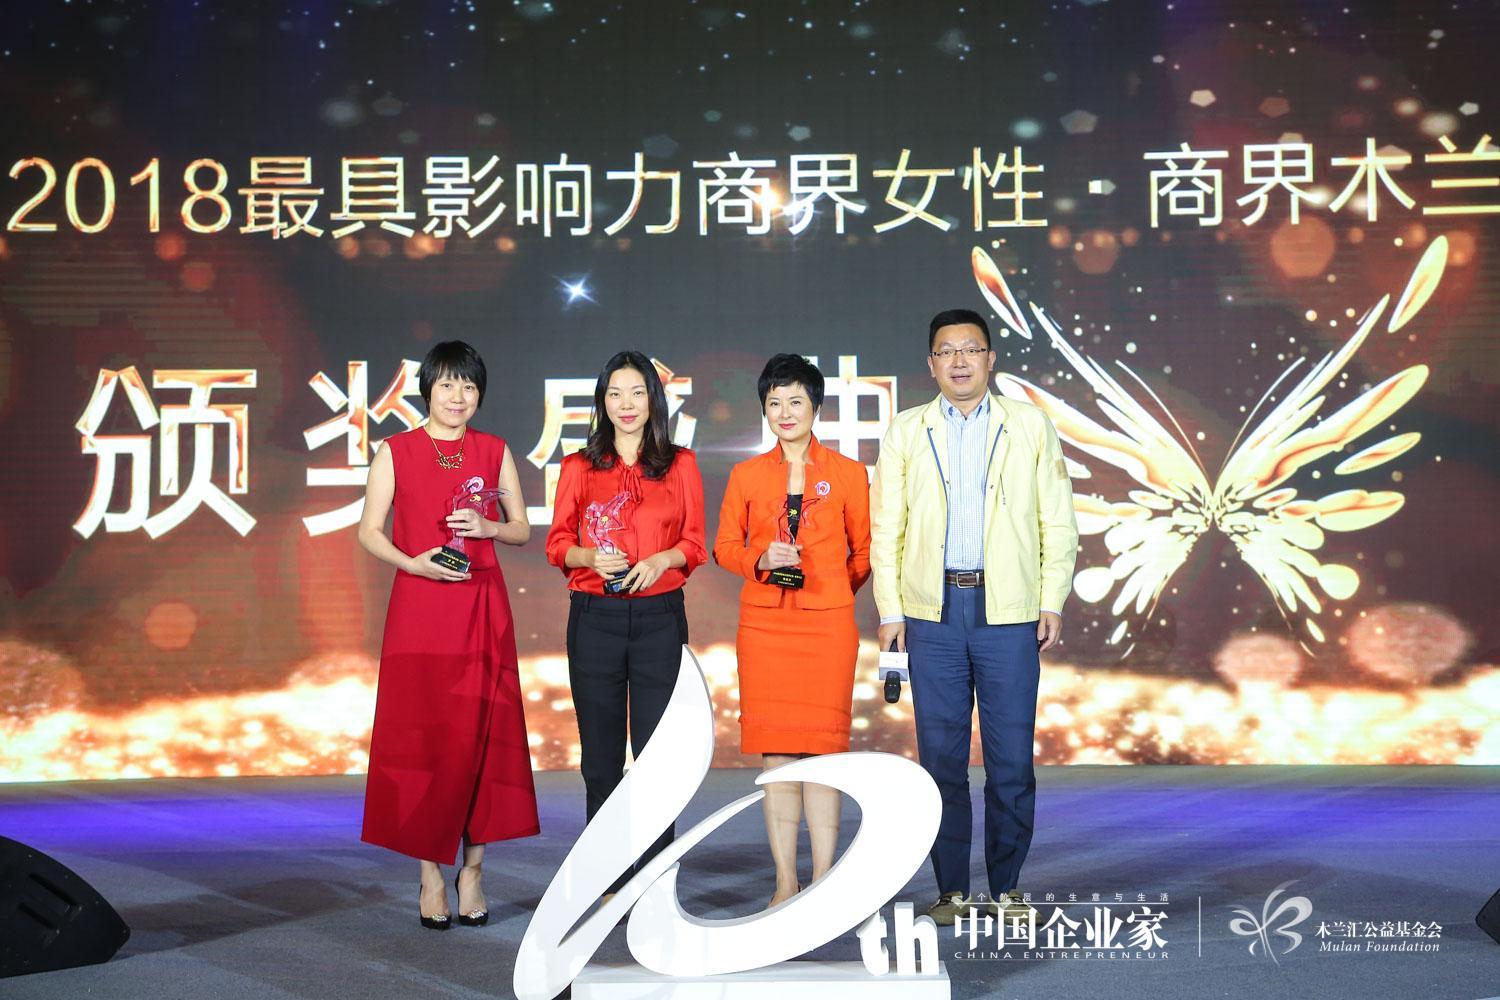 羅靜女士榮獲“2018中國商界女性·商界木蘭”獎